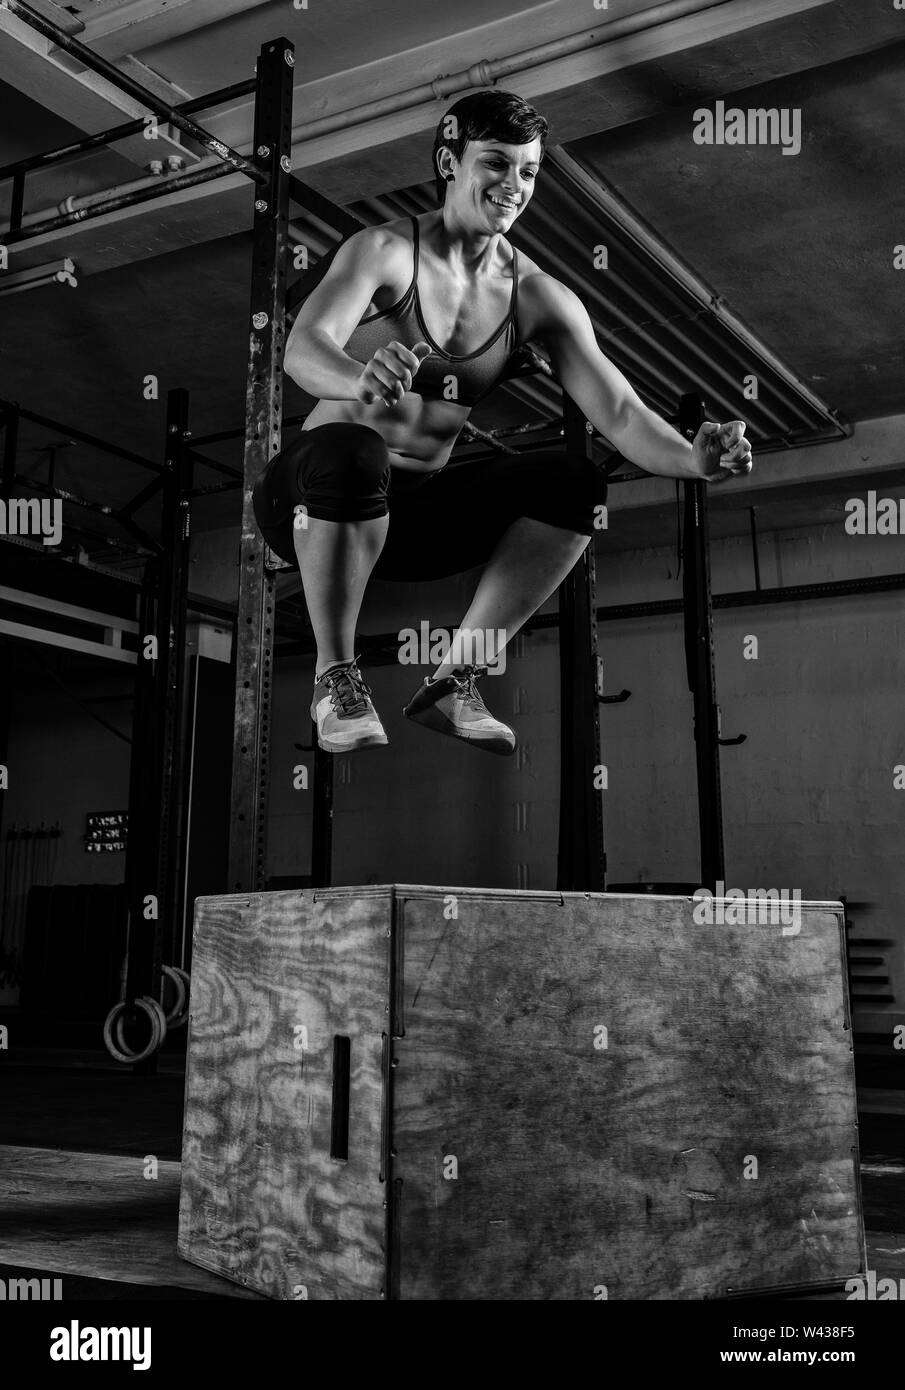 Eine athletische kurze behaarte Frau mit starken abs tut, springt in ein Fitnessstudio. Die weiblichen Athleten lächelt und springen auf die Box. Schwarz und Weiß. Stockfoto